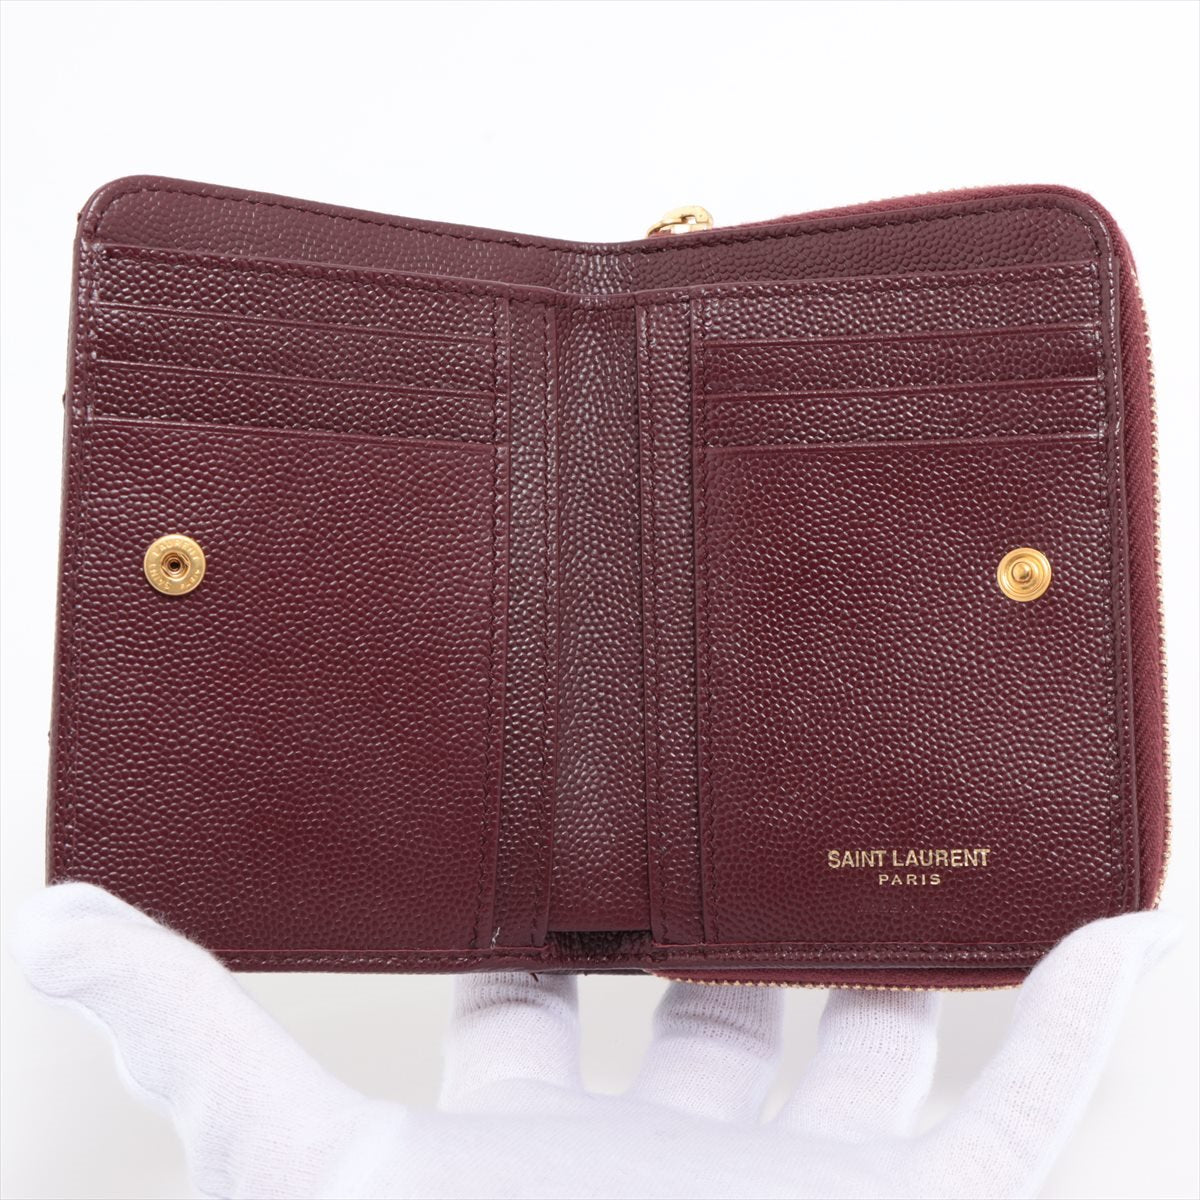 Saint Laurent V Stitch GUE403723 Leather Compact Wallet Bordeaux